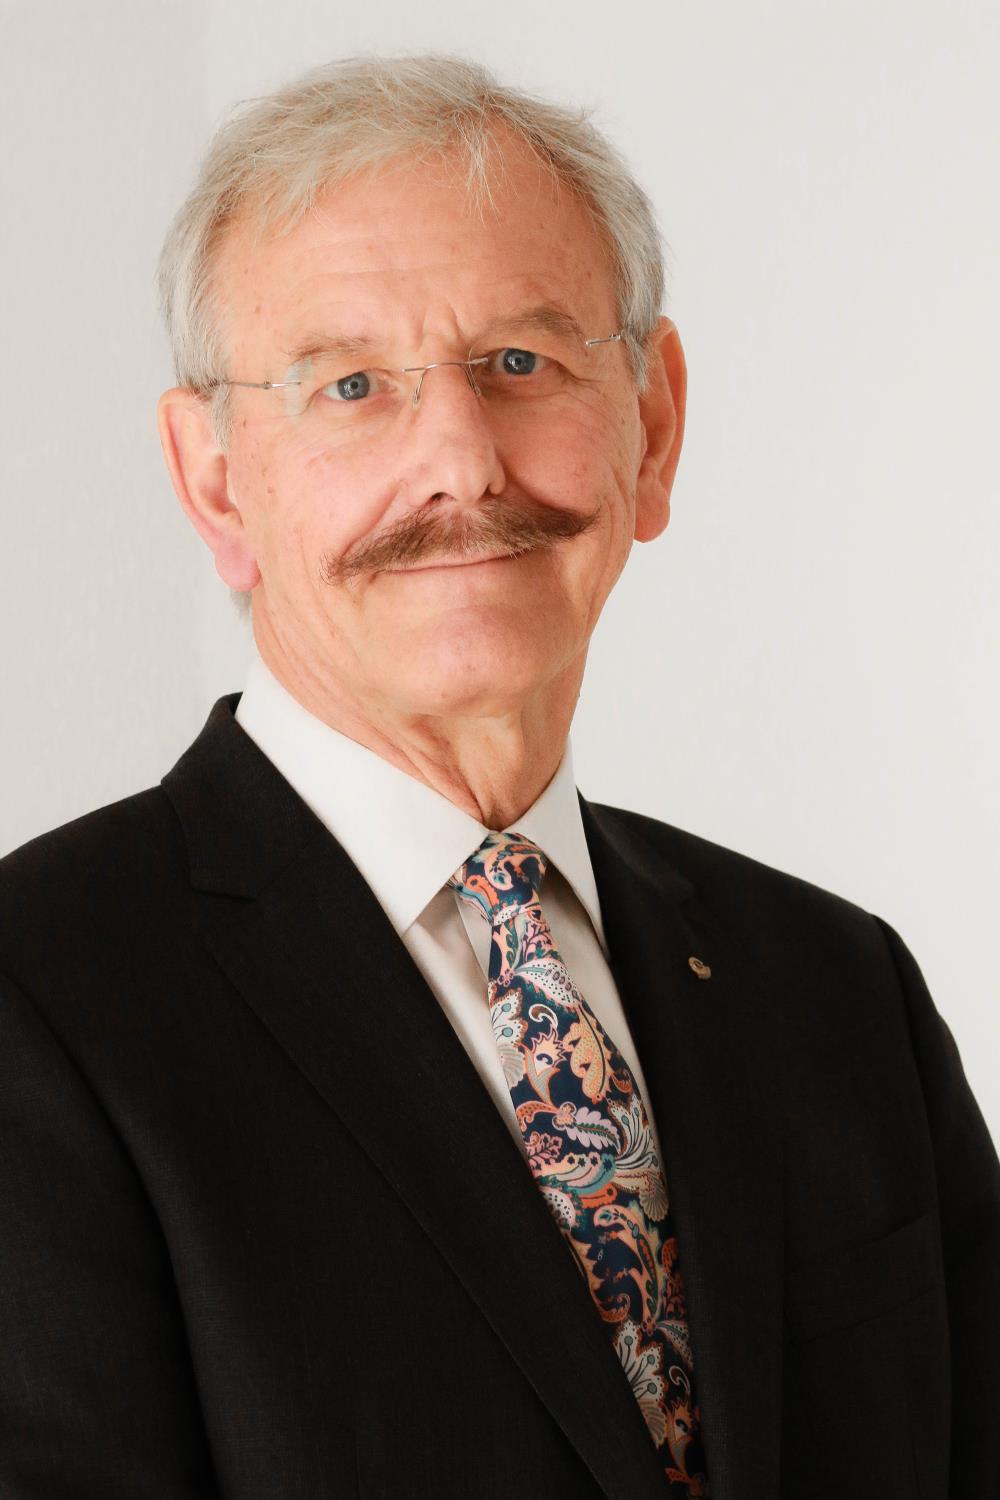 Michael Bauer, Rechtsanwalt in der Kanzlei Bauer